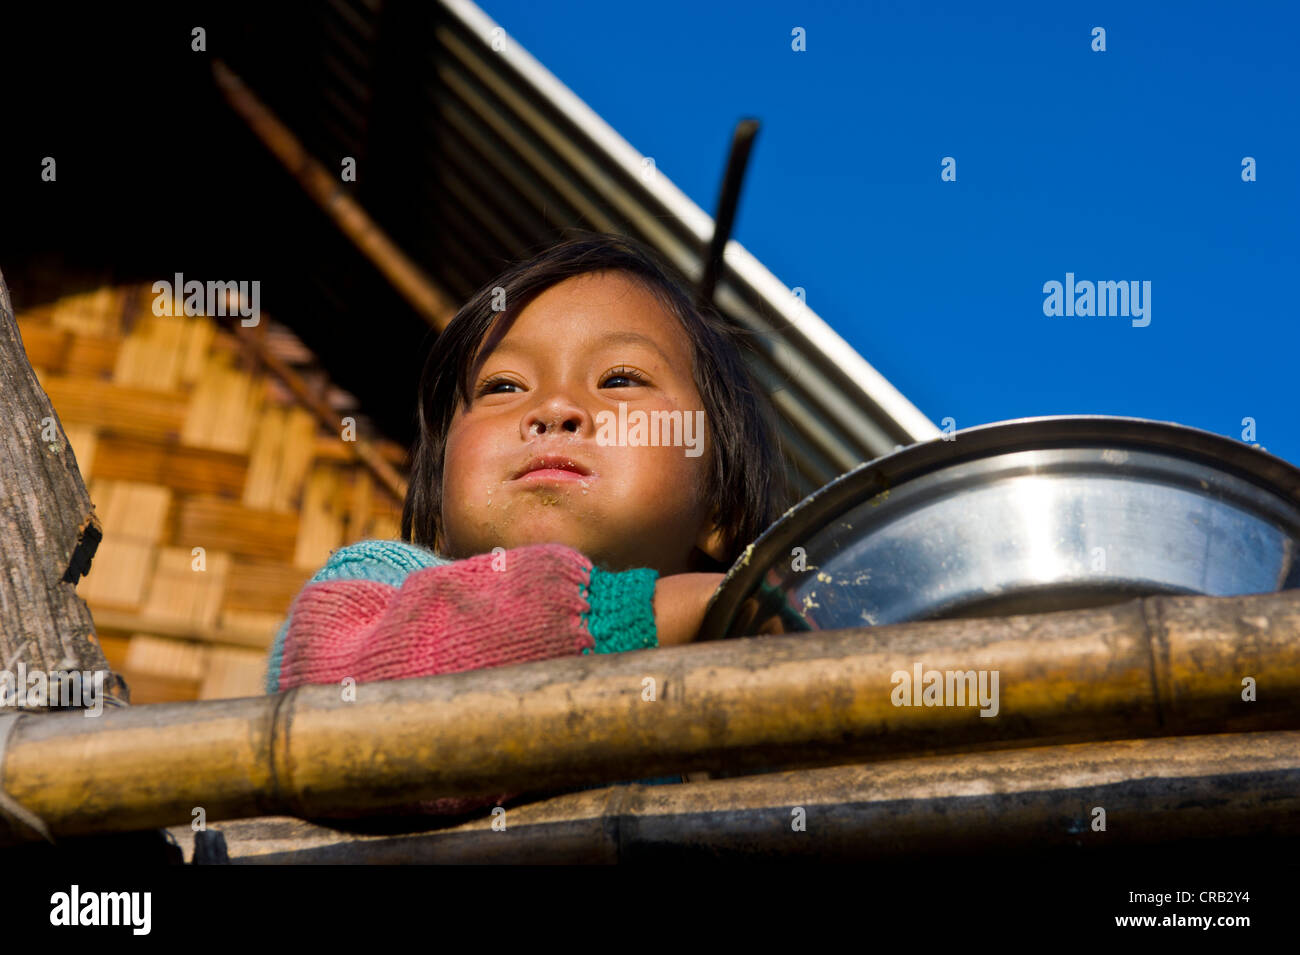 Jeune fille de l'ethnie Apatani, de l'Arunachal Pradesh, au nord-est de l'Inde, l'Inde, l'Asie Banque D'Images